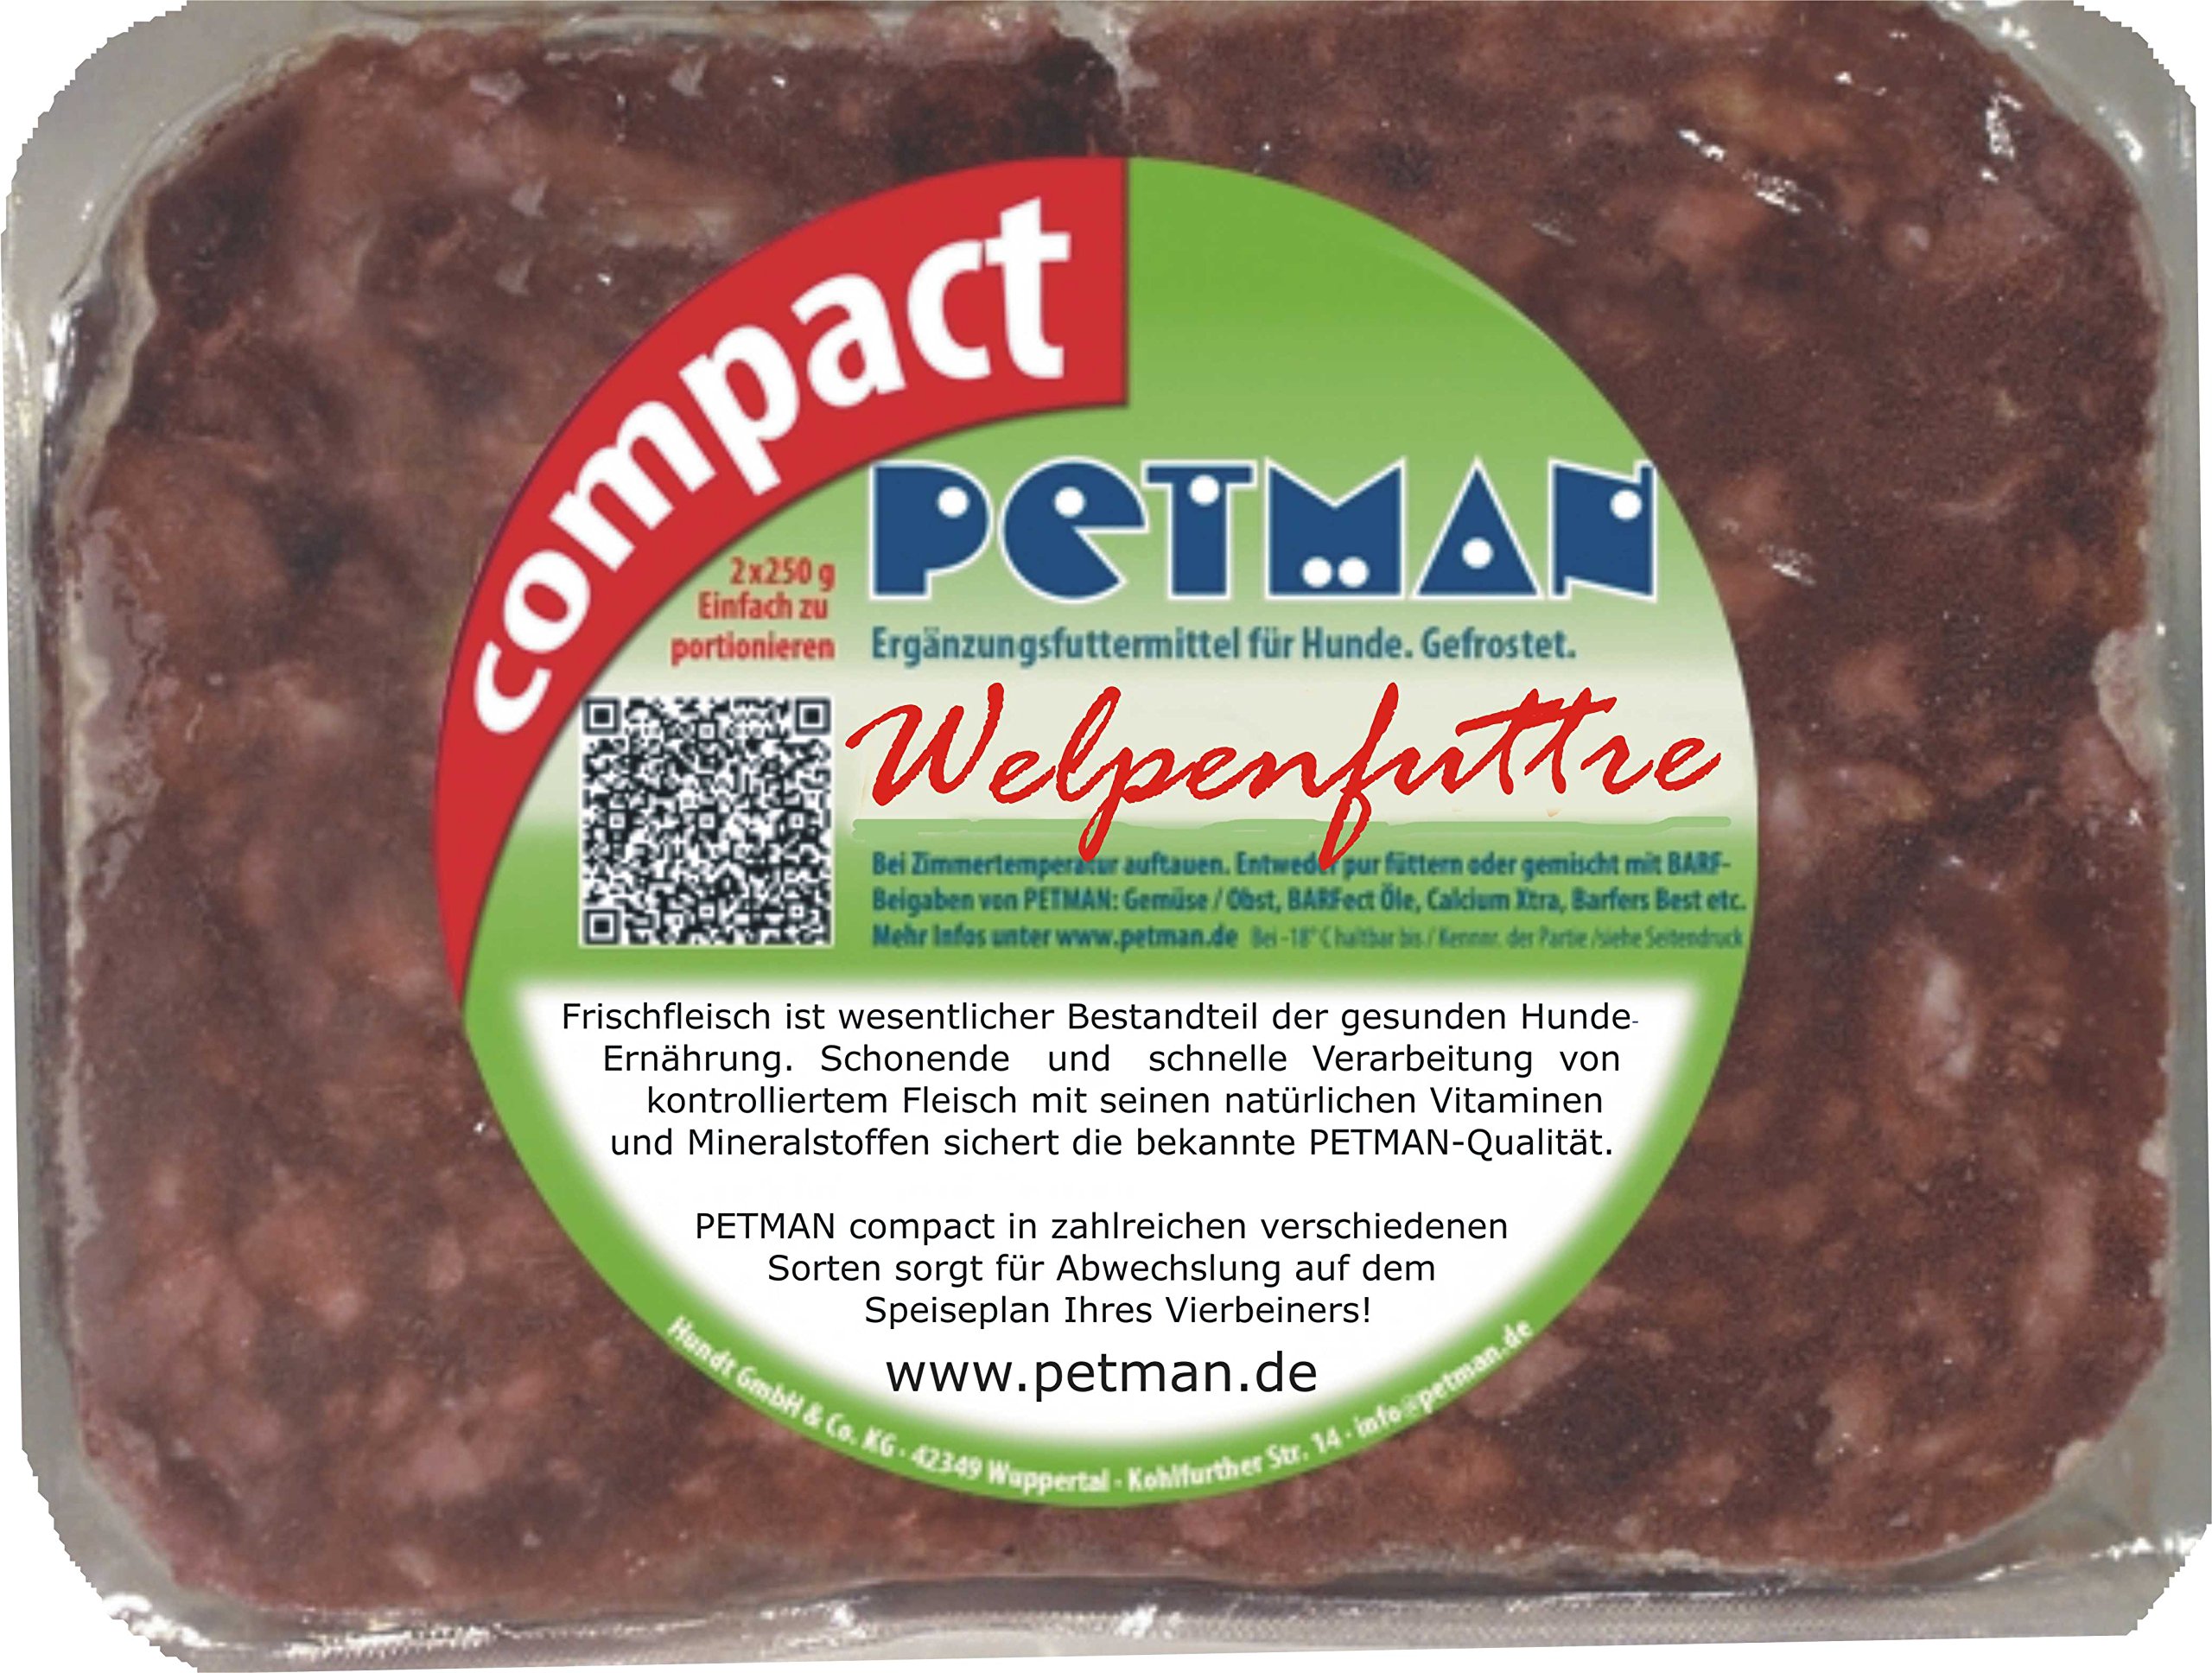 petman compact Welpenfutter, 12 x 500g-Beutel, Tiefkühlfutter, gesunde, natürliche Ernährung für Hunde, Hundefutter, Barf, B.A.R.F.